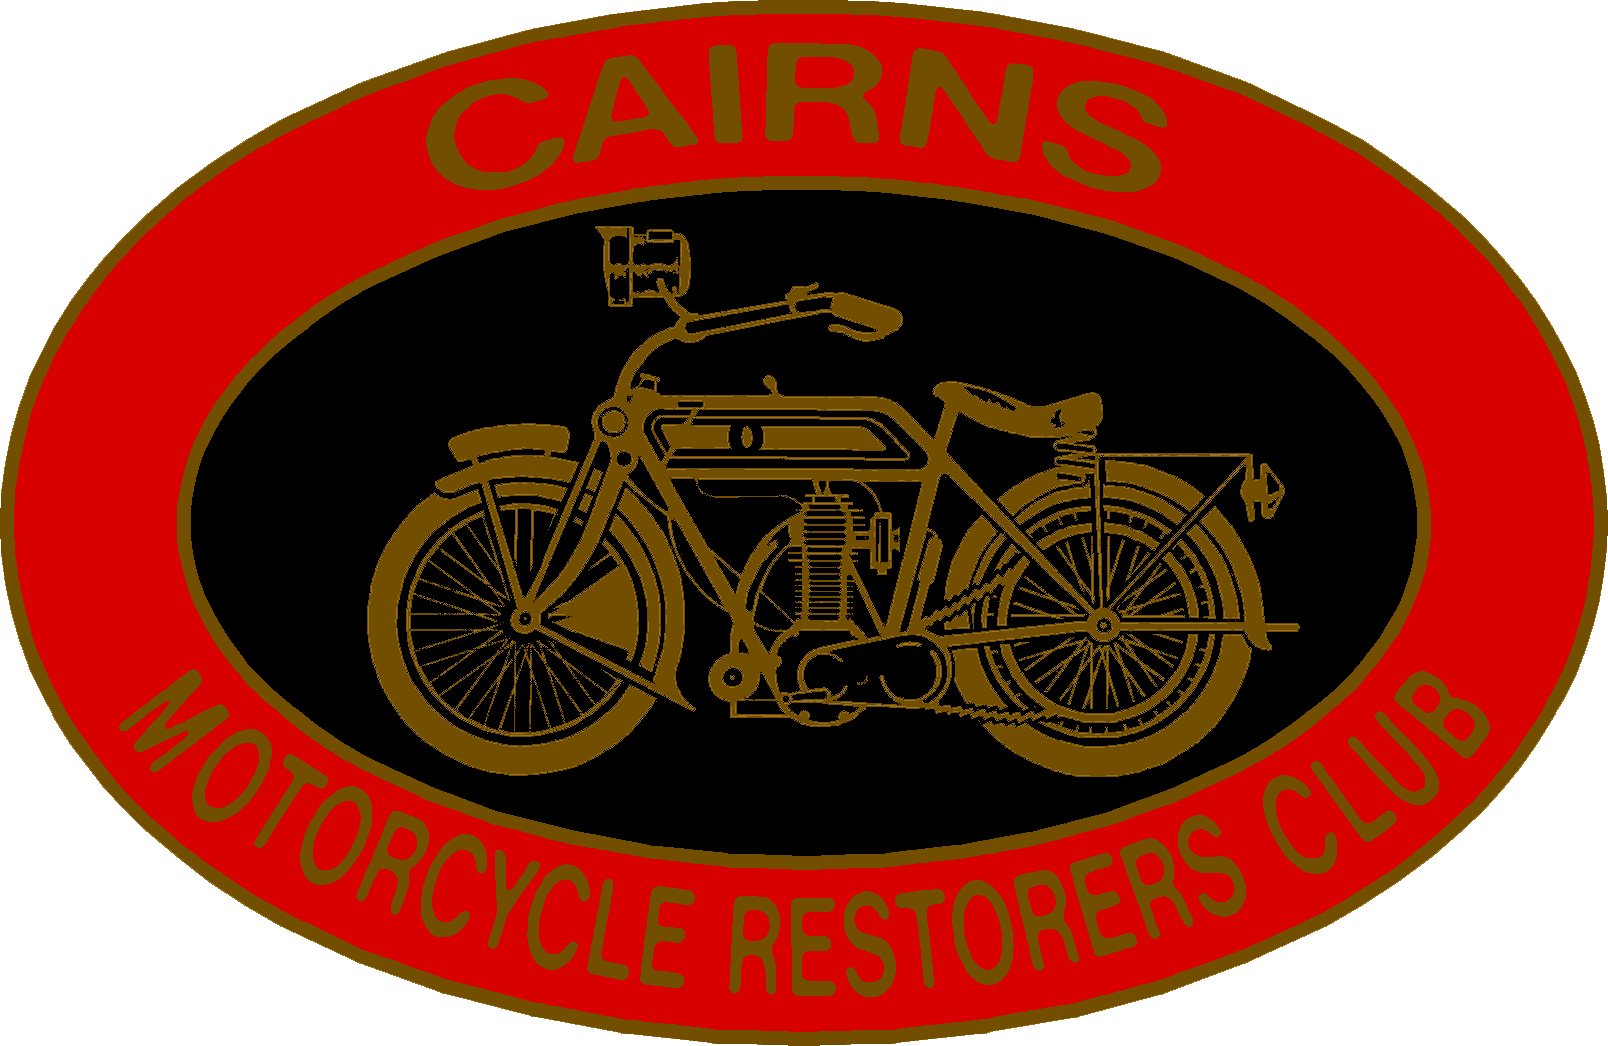 Cairns Motorcycle Restorers Club Inc.